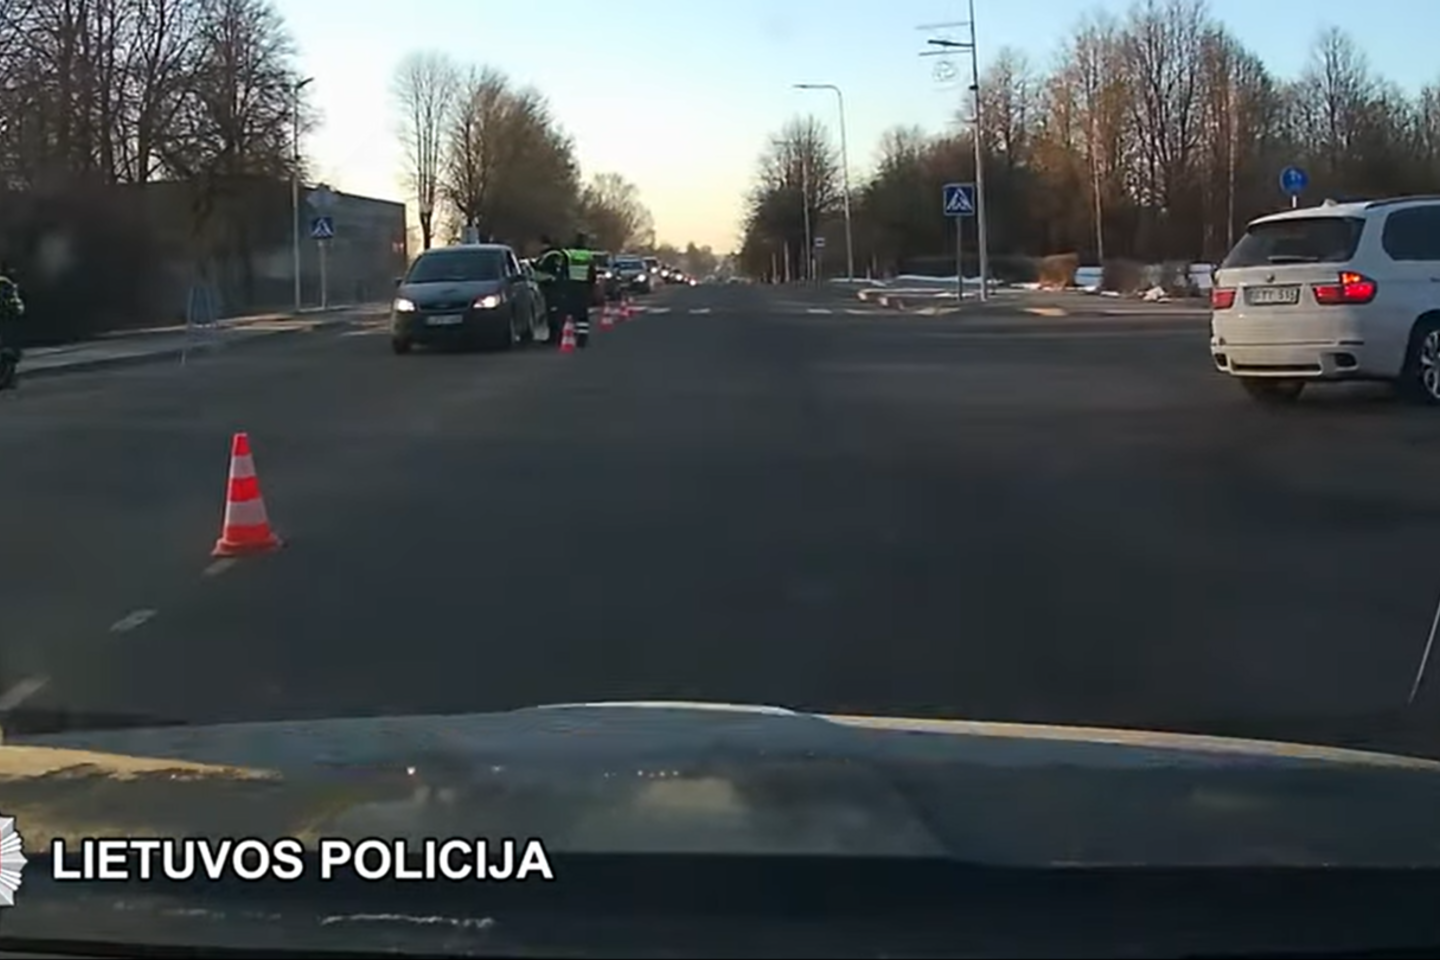 Vasario 28 d. nuo 5 val. iki 9 val. Šalčininkuose, Vilniaus g., Šalčininkų r. policija vykdė prevencinę priemonę šiurkštiems Kelių eismo taisyklių pažeidimams nustatyti.<br>Stop kadras